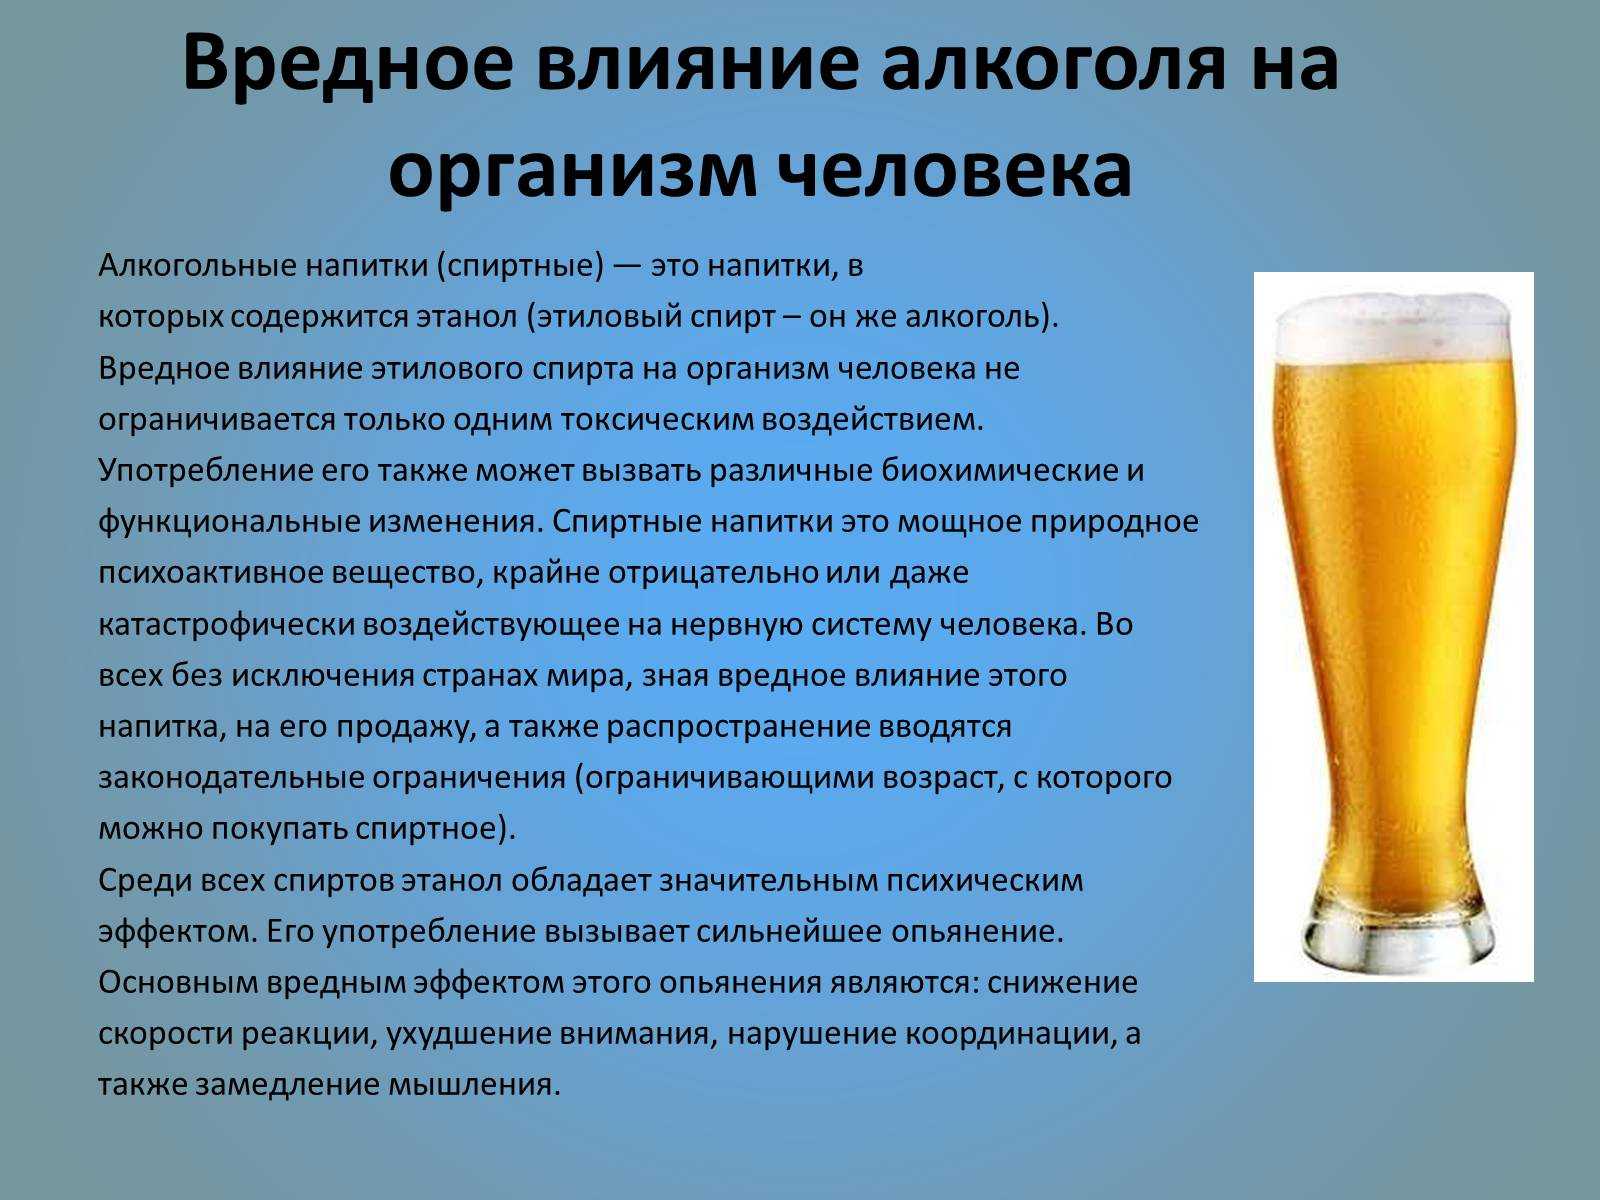 Со скольки лет продают безалкогольное пиво в россии 2020